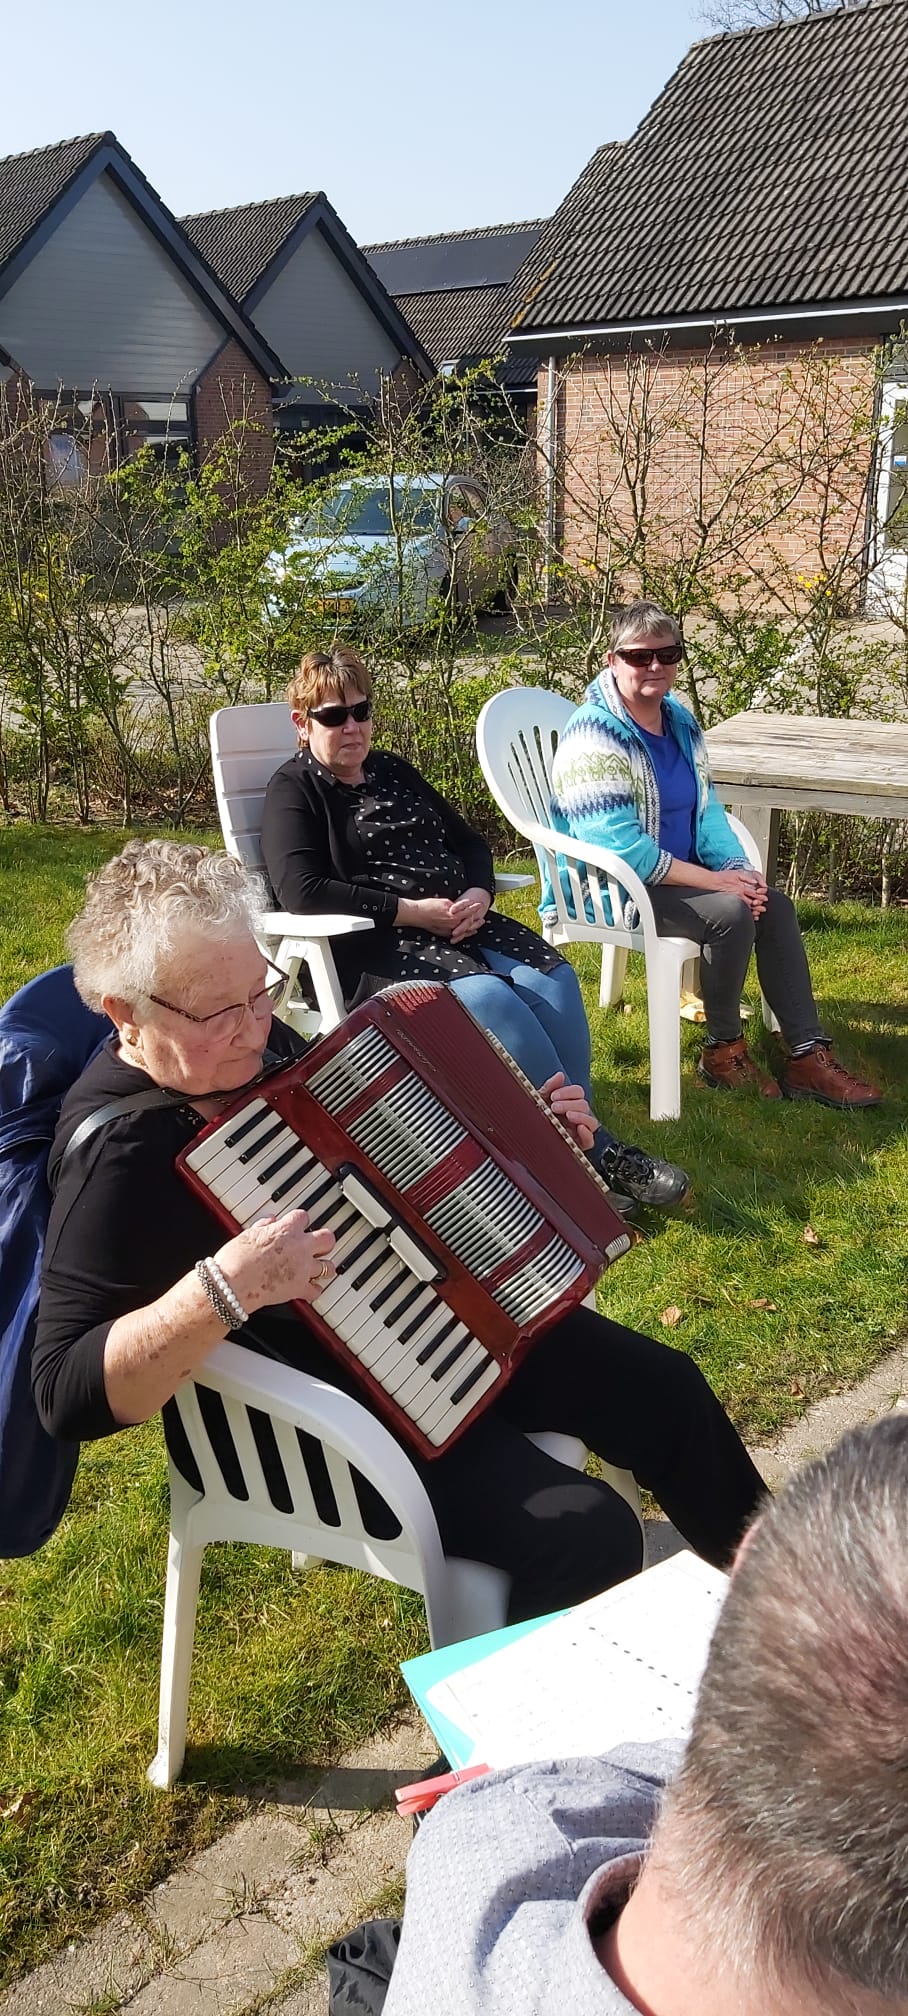 De schoonmoeder van Evelyn speelt prachtig op de accordeon